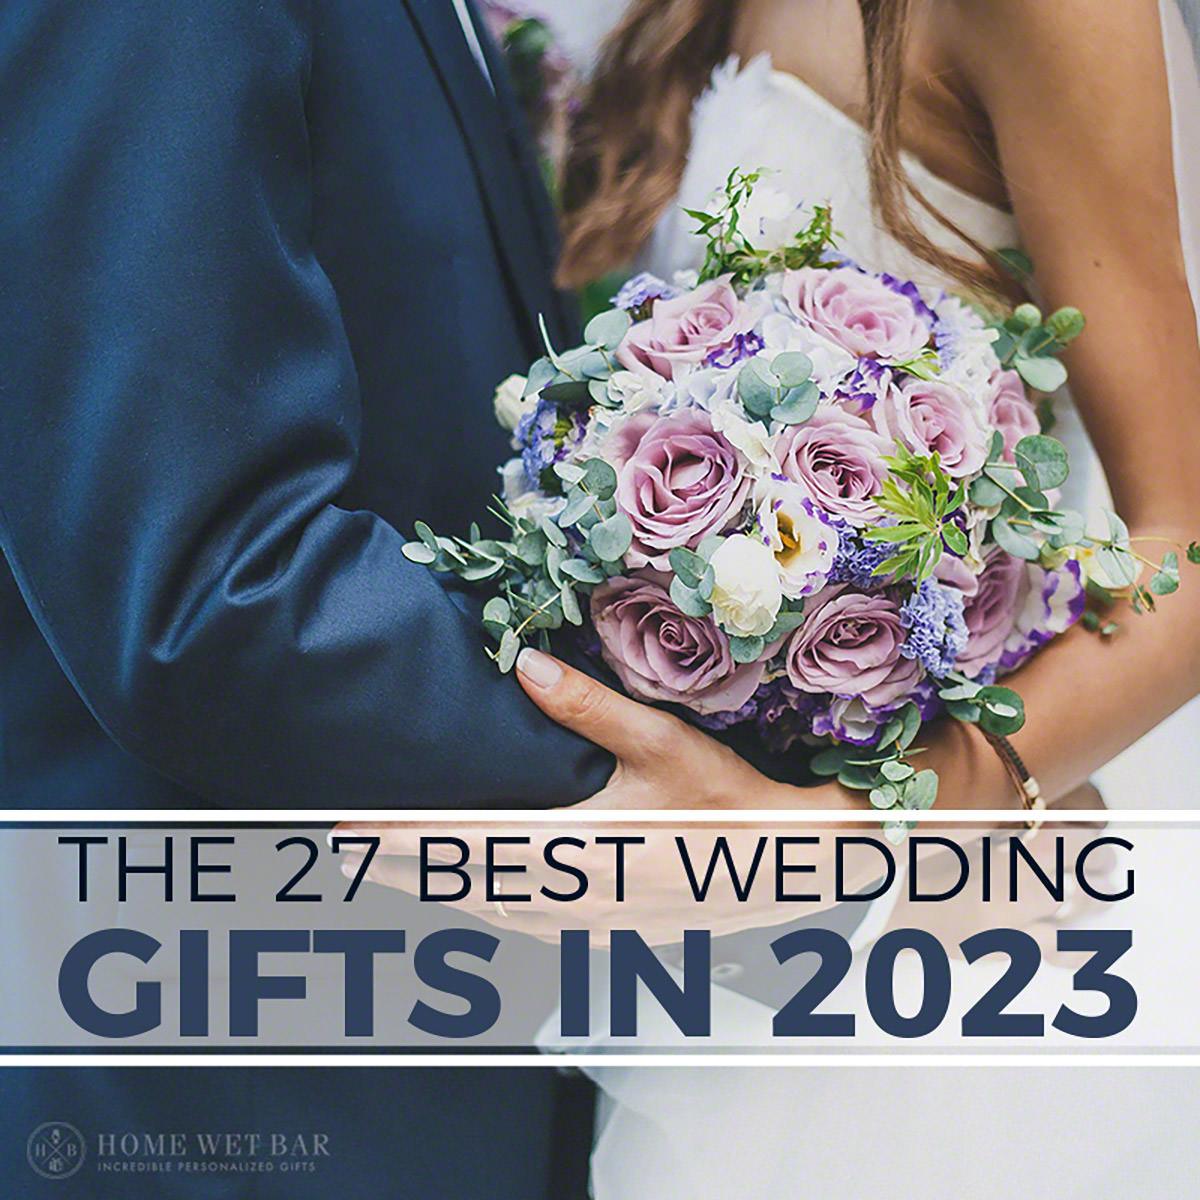 https://www.homewetbar.com/blog/wp-content/uploads/2020/03/The-27-Best-Wedding-Gifts-In-2023.jpg